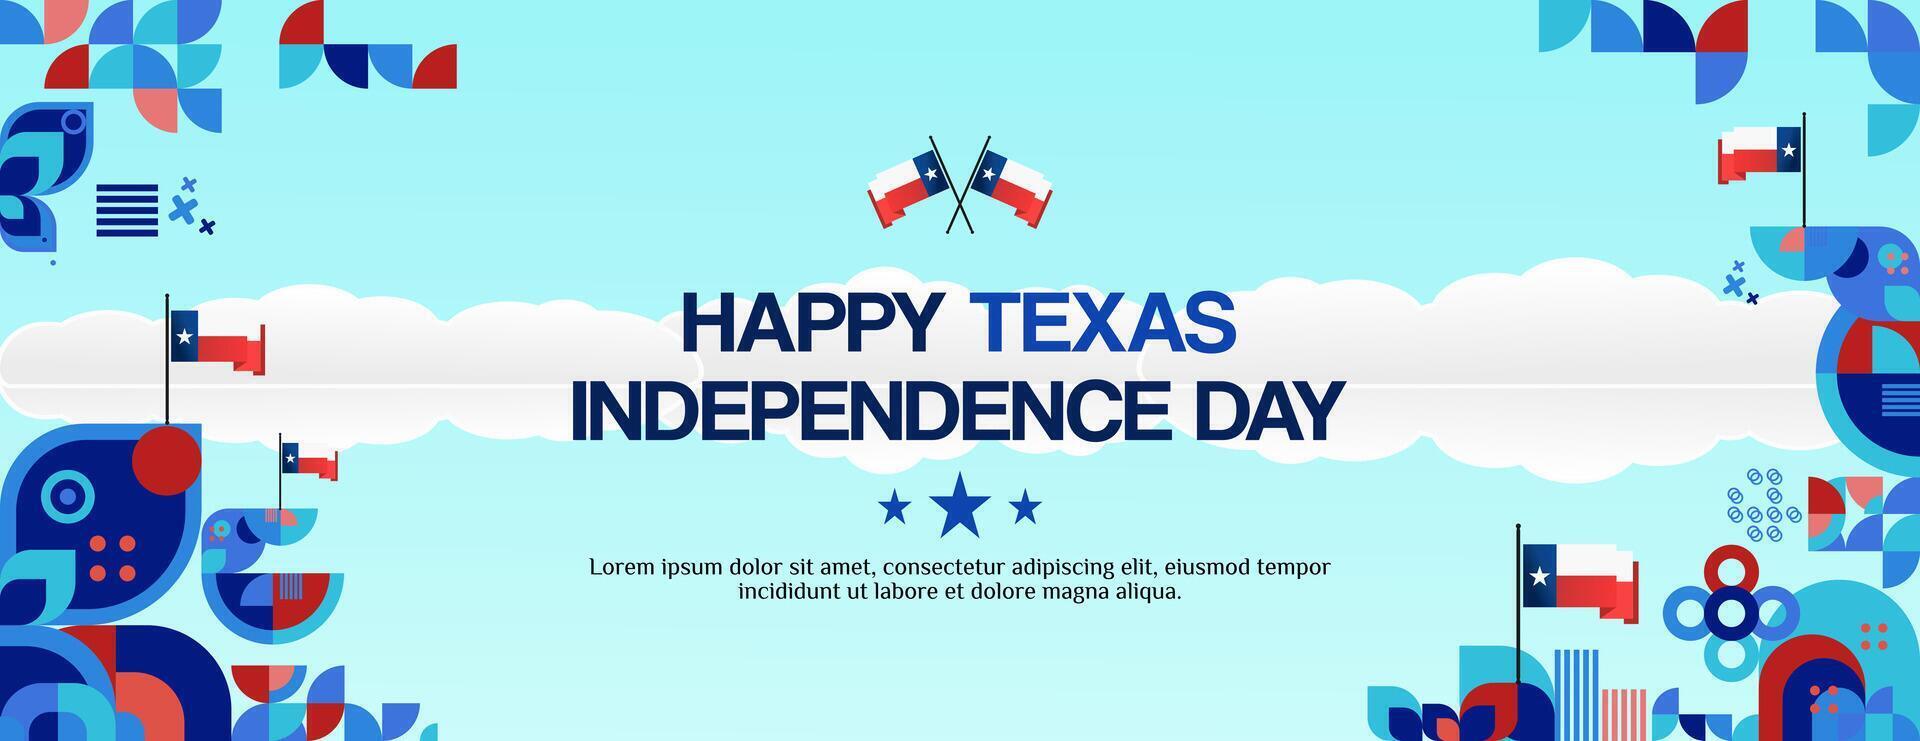 Texas indipendenza giorno bandiera nel colorato moderno geometrico stile. contento nazionale indipendenza giorno saluto carta copertina con tipografia. vettore illustrazione per nazionale vacanza celebrazione festa